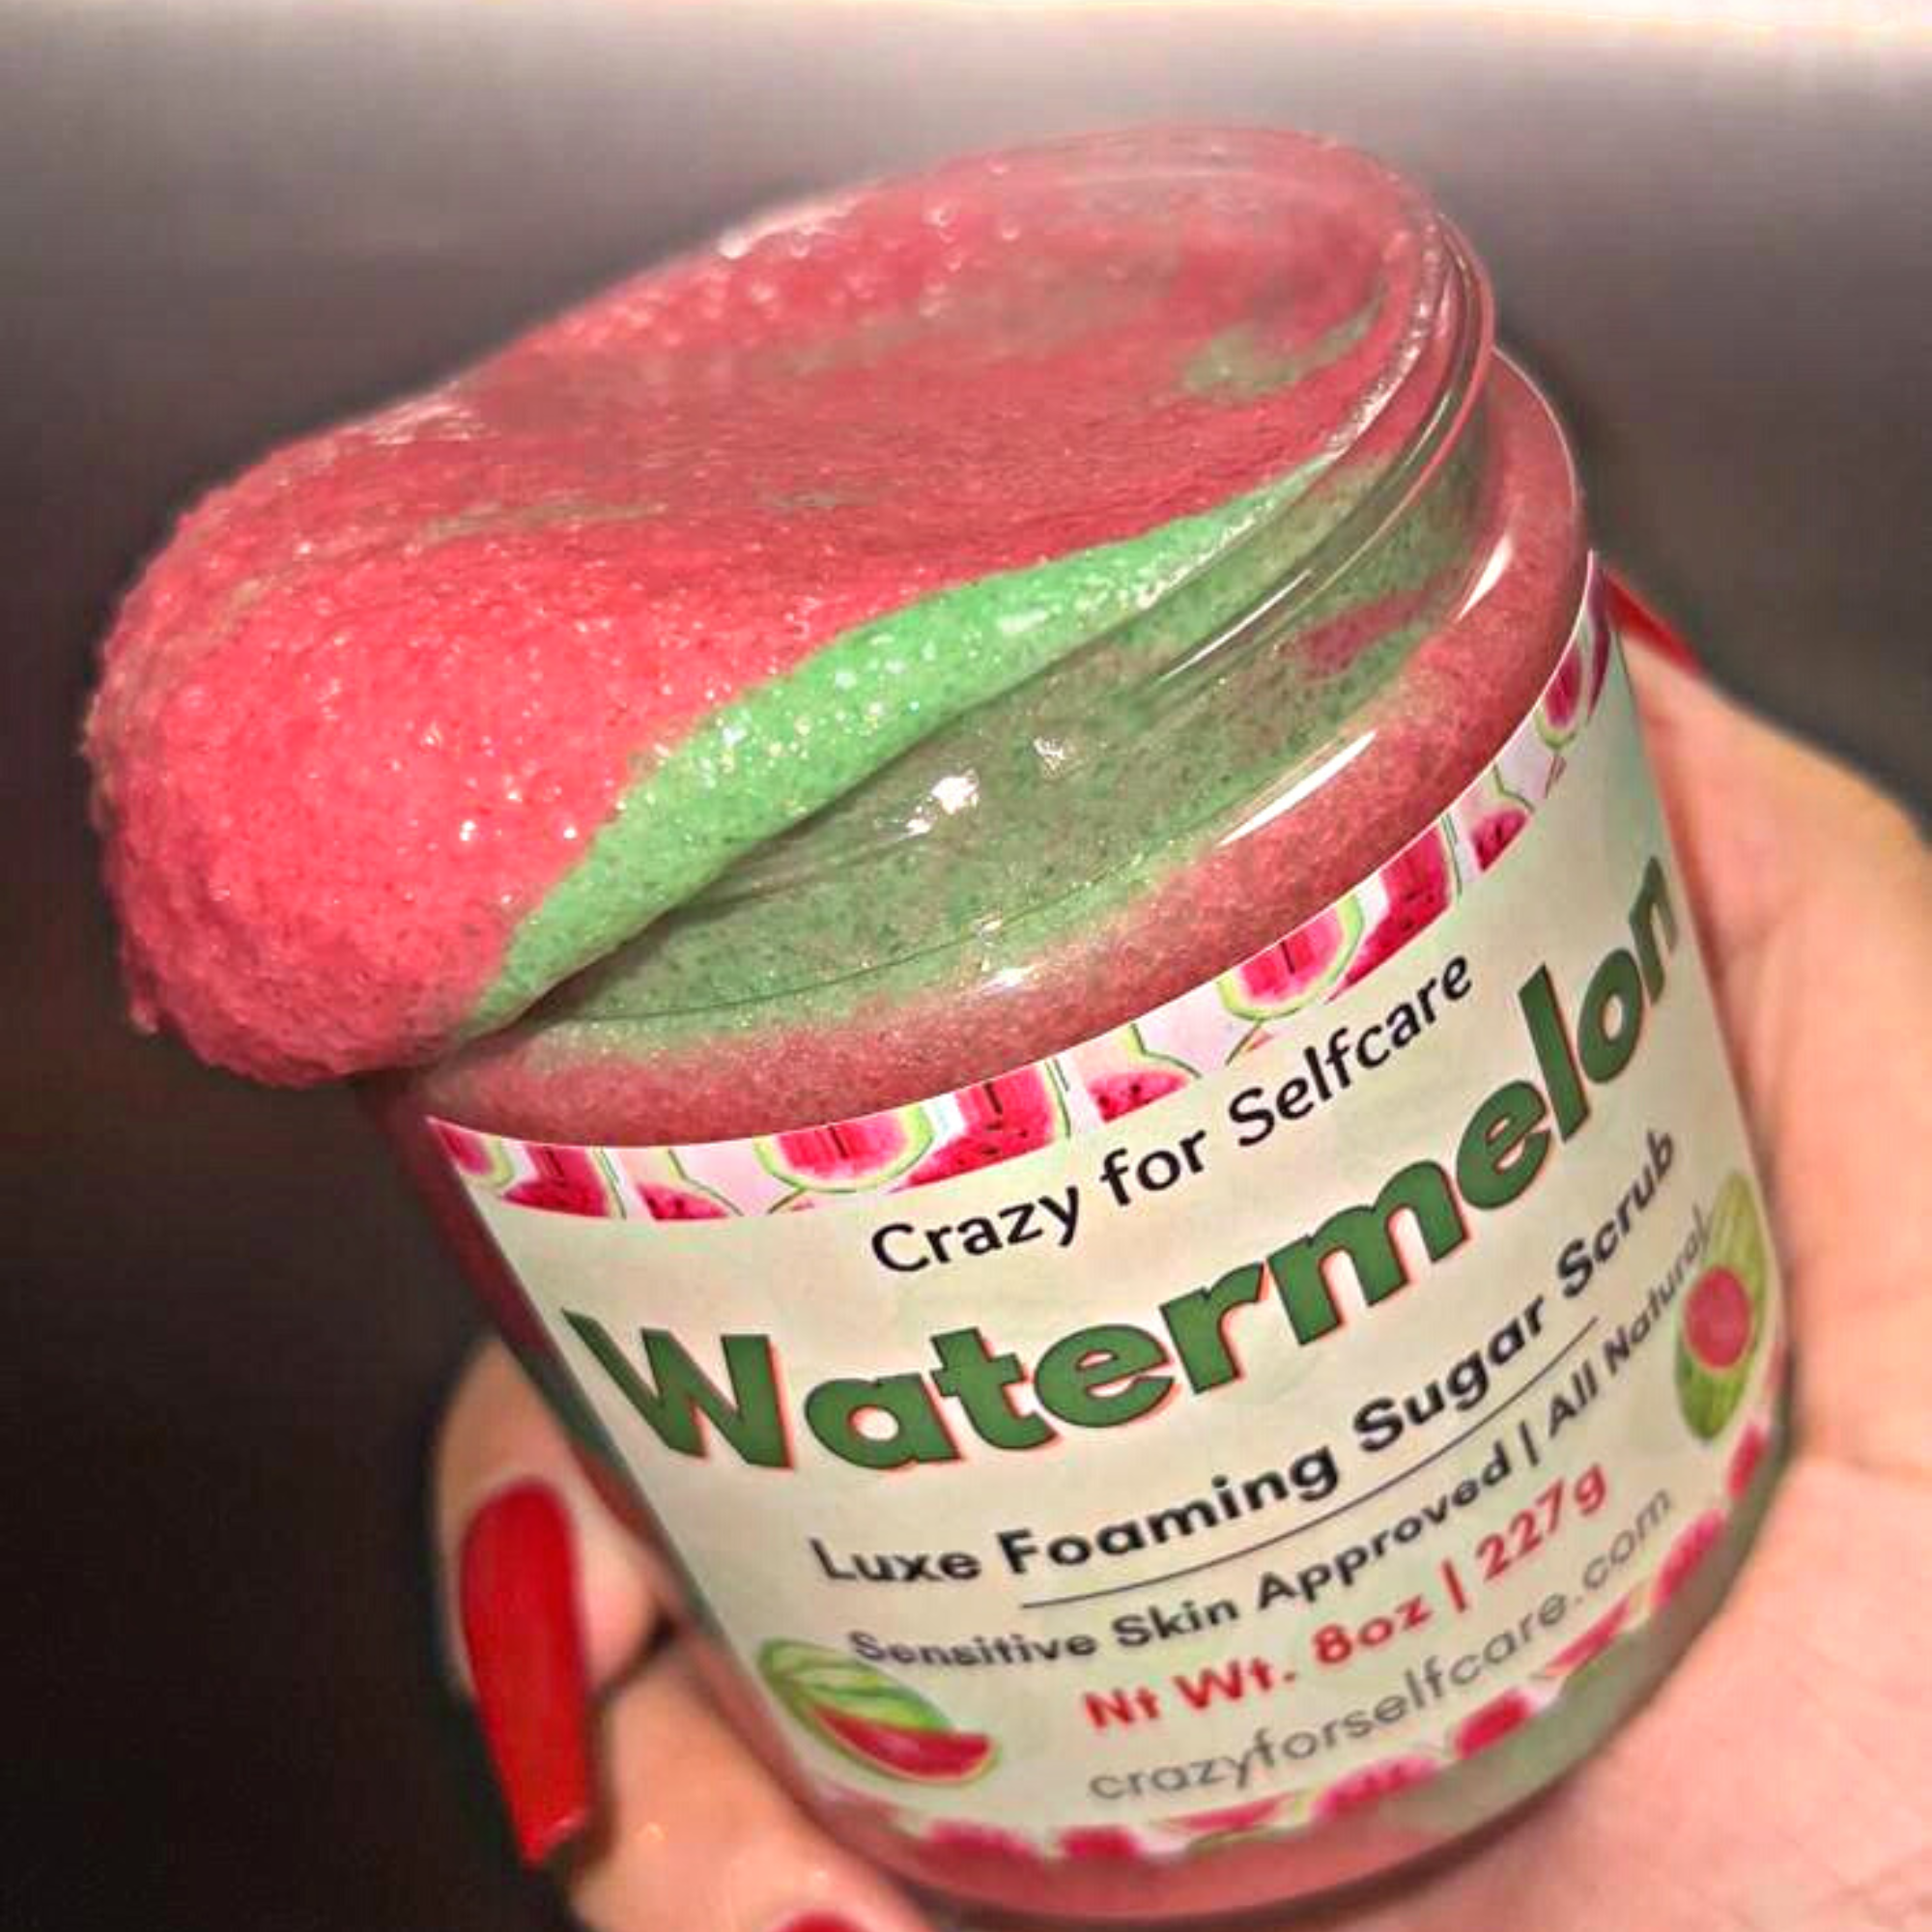 Watermelon Luxe Foaming Sugar Scrub